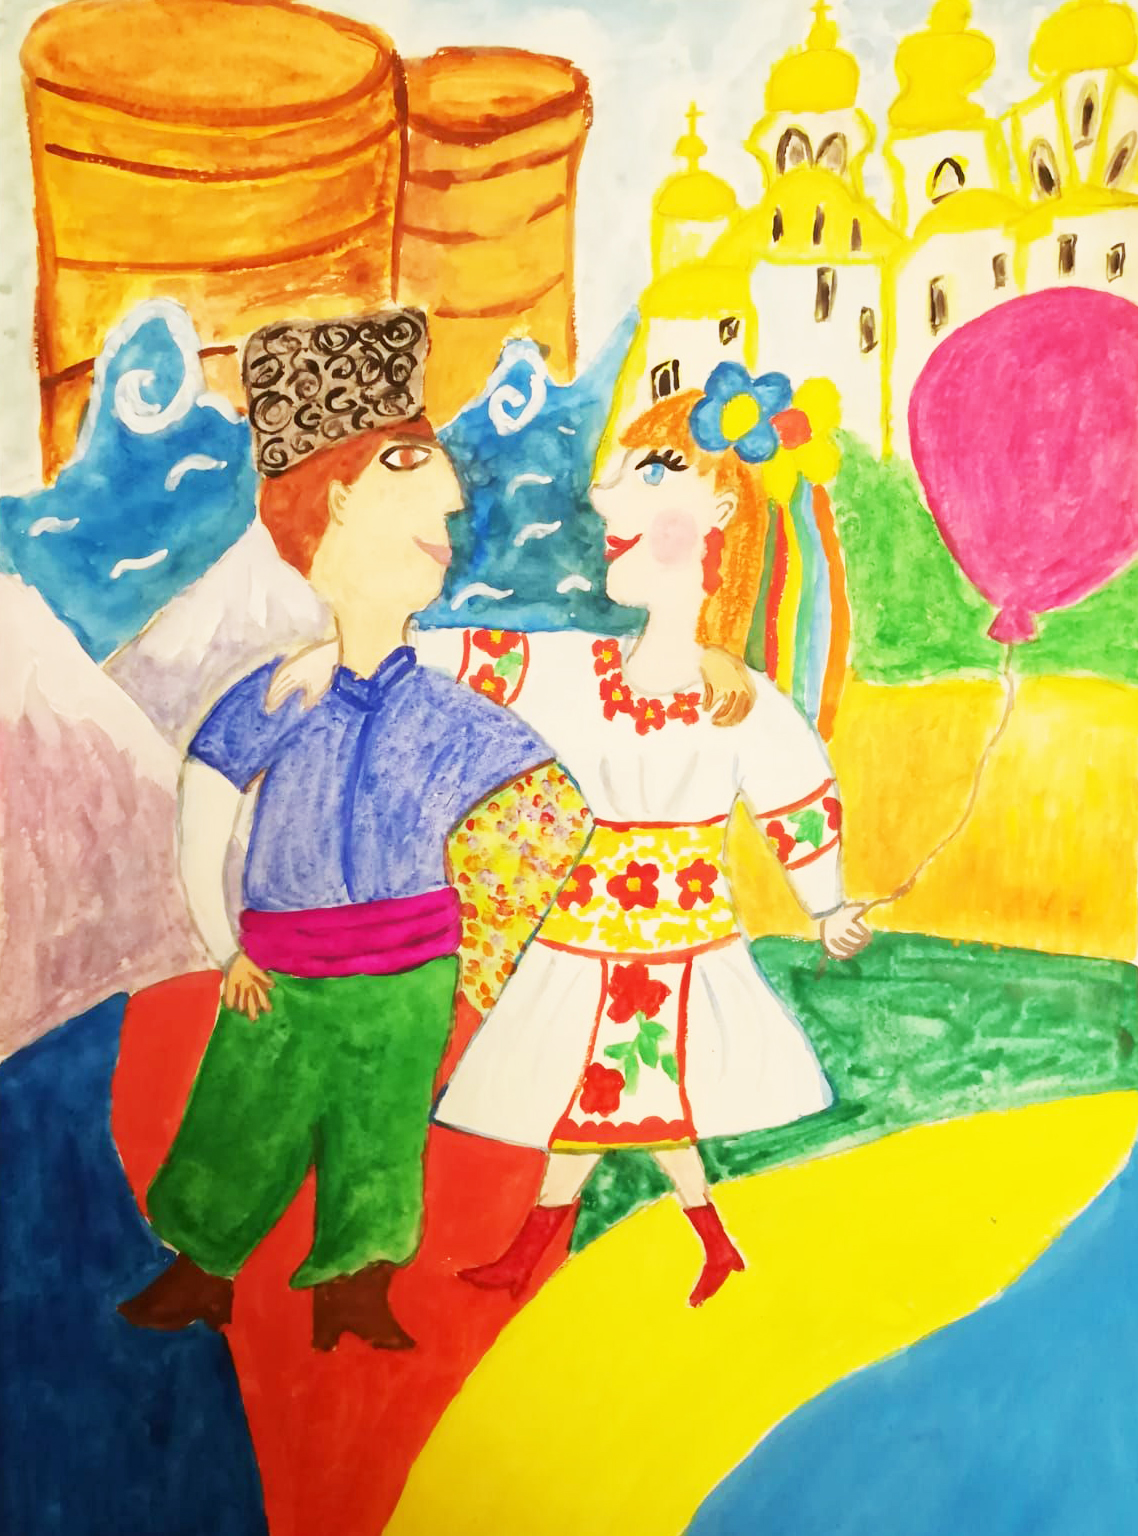 Дружба та кохання Азербайджану та України - малюнок конкурсу дитячої творчості в Баку - Азербайджан